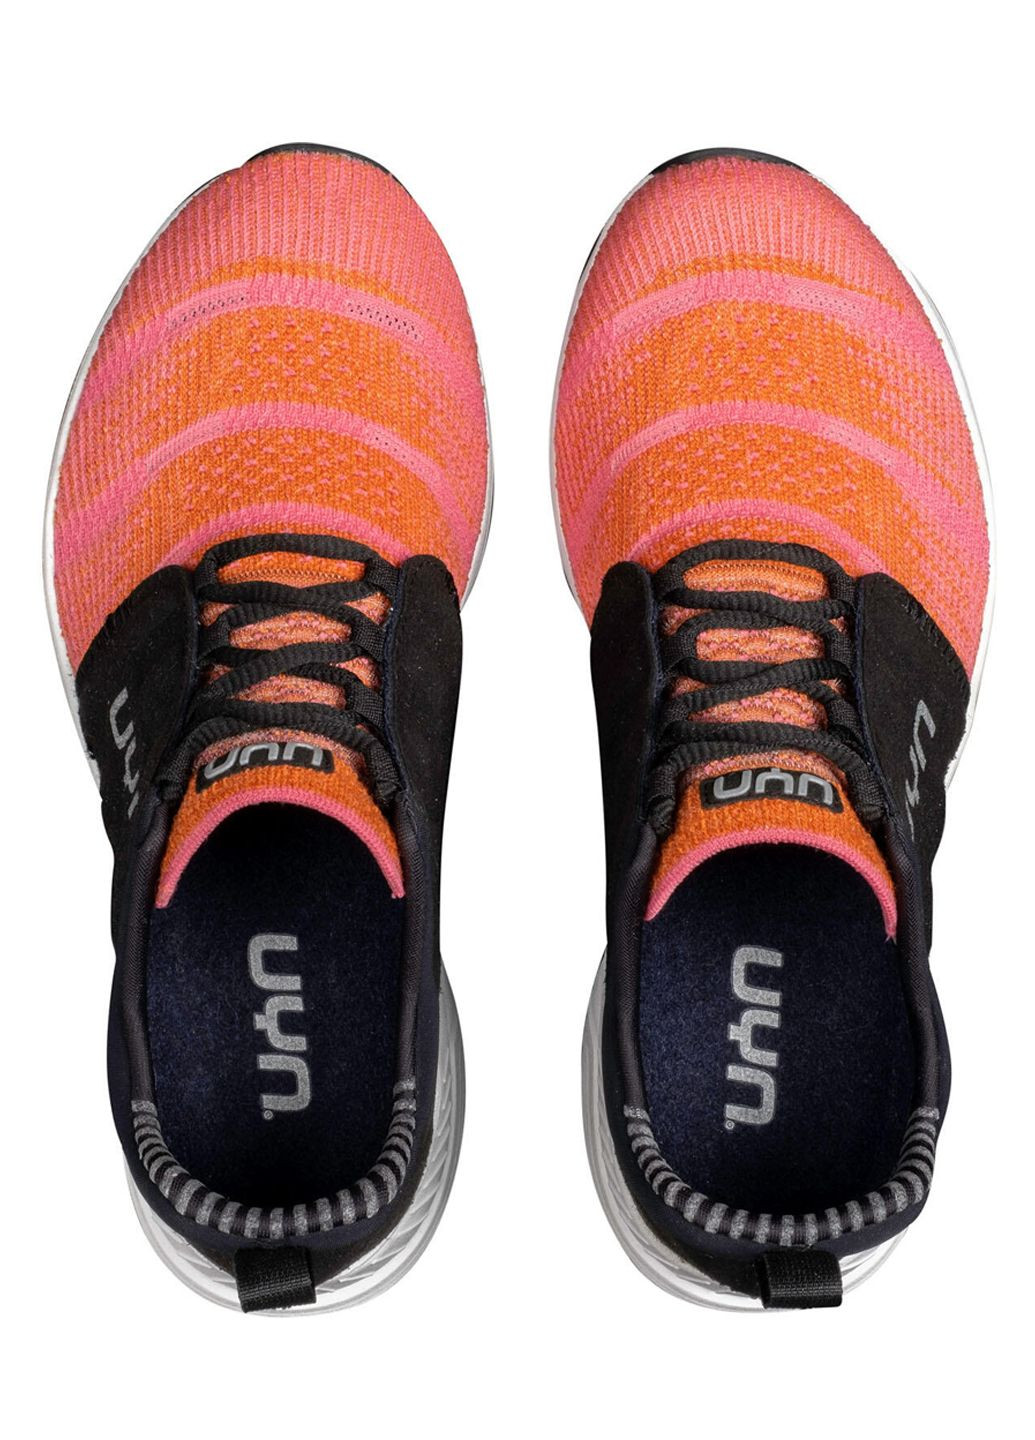 Цветные кроссовки женские UYN Air Dual Tune О051 Orange/Pink